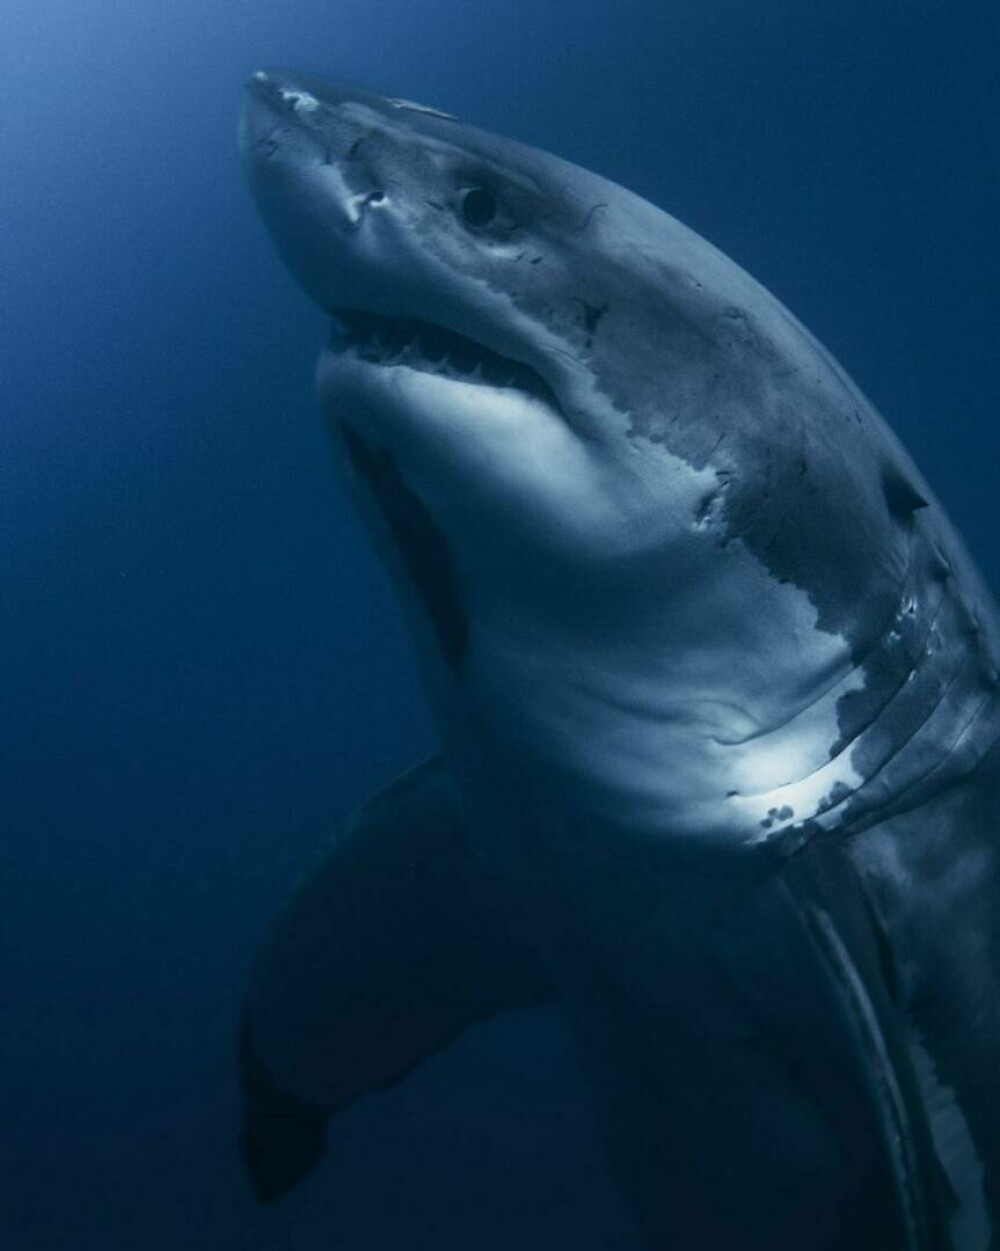 Imagini uimitoare surprinse de supraviețuitorul atacului unui rechin. Fotografiază prădătorii de aproape | GALERIE FOTO - Imaginea 14